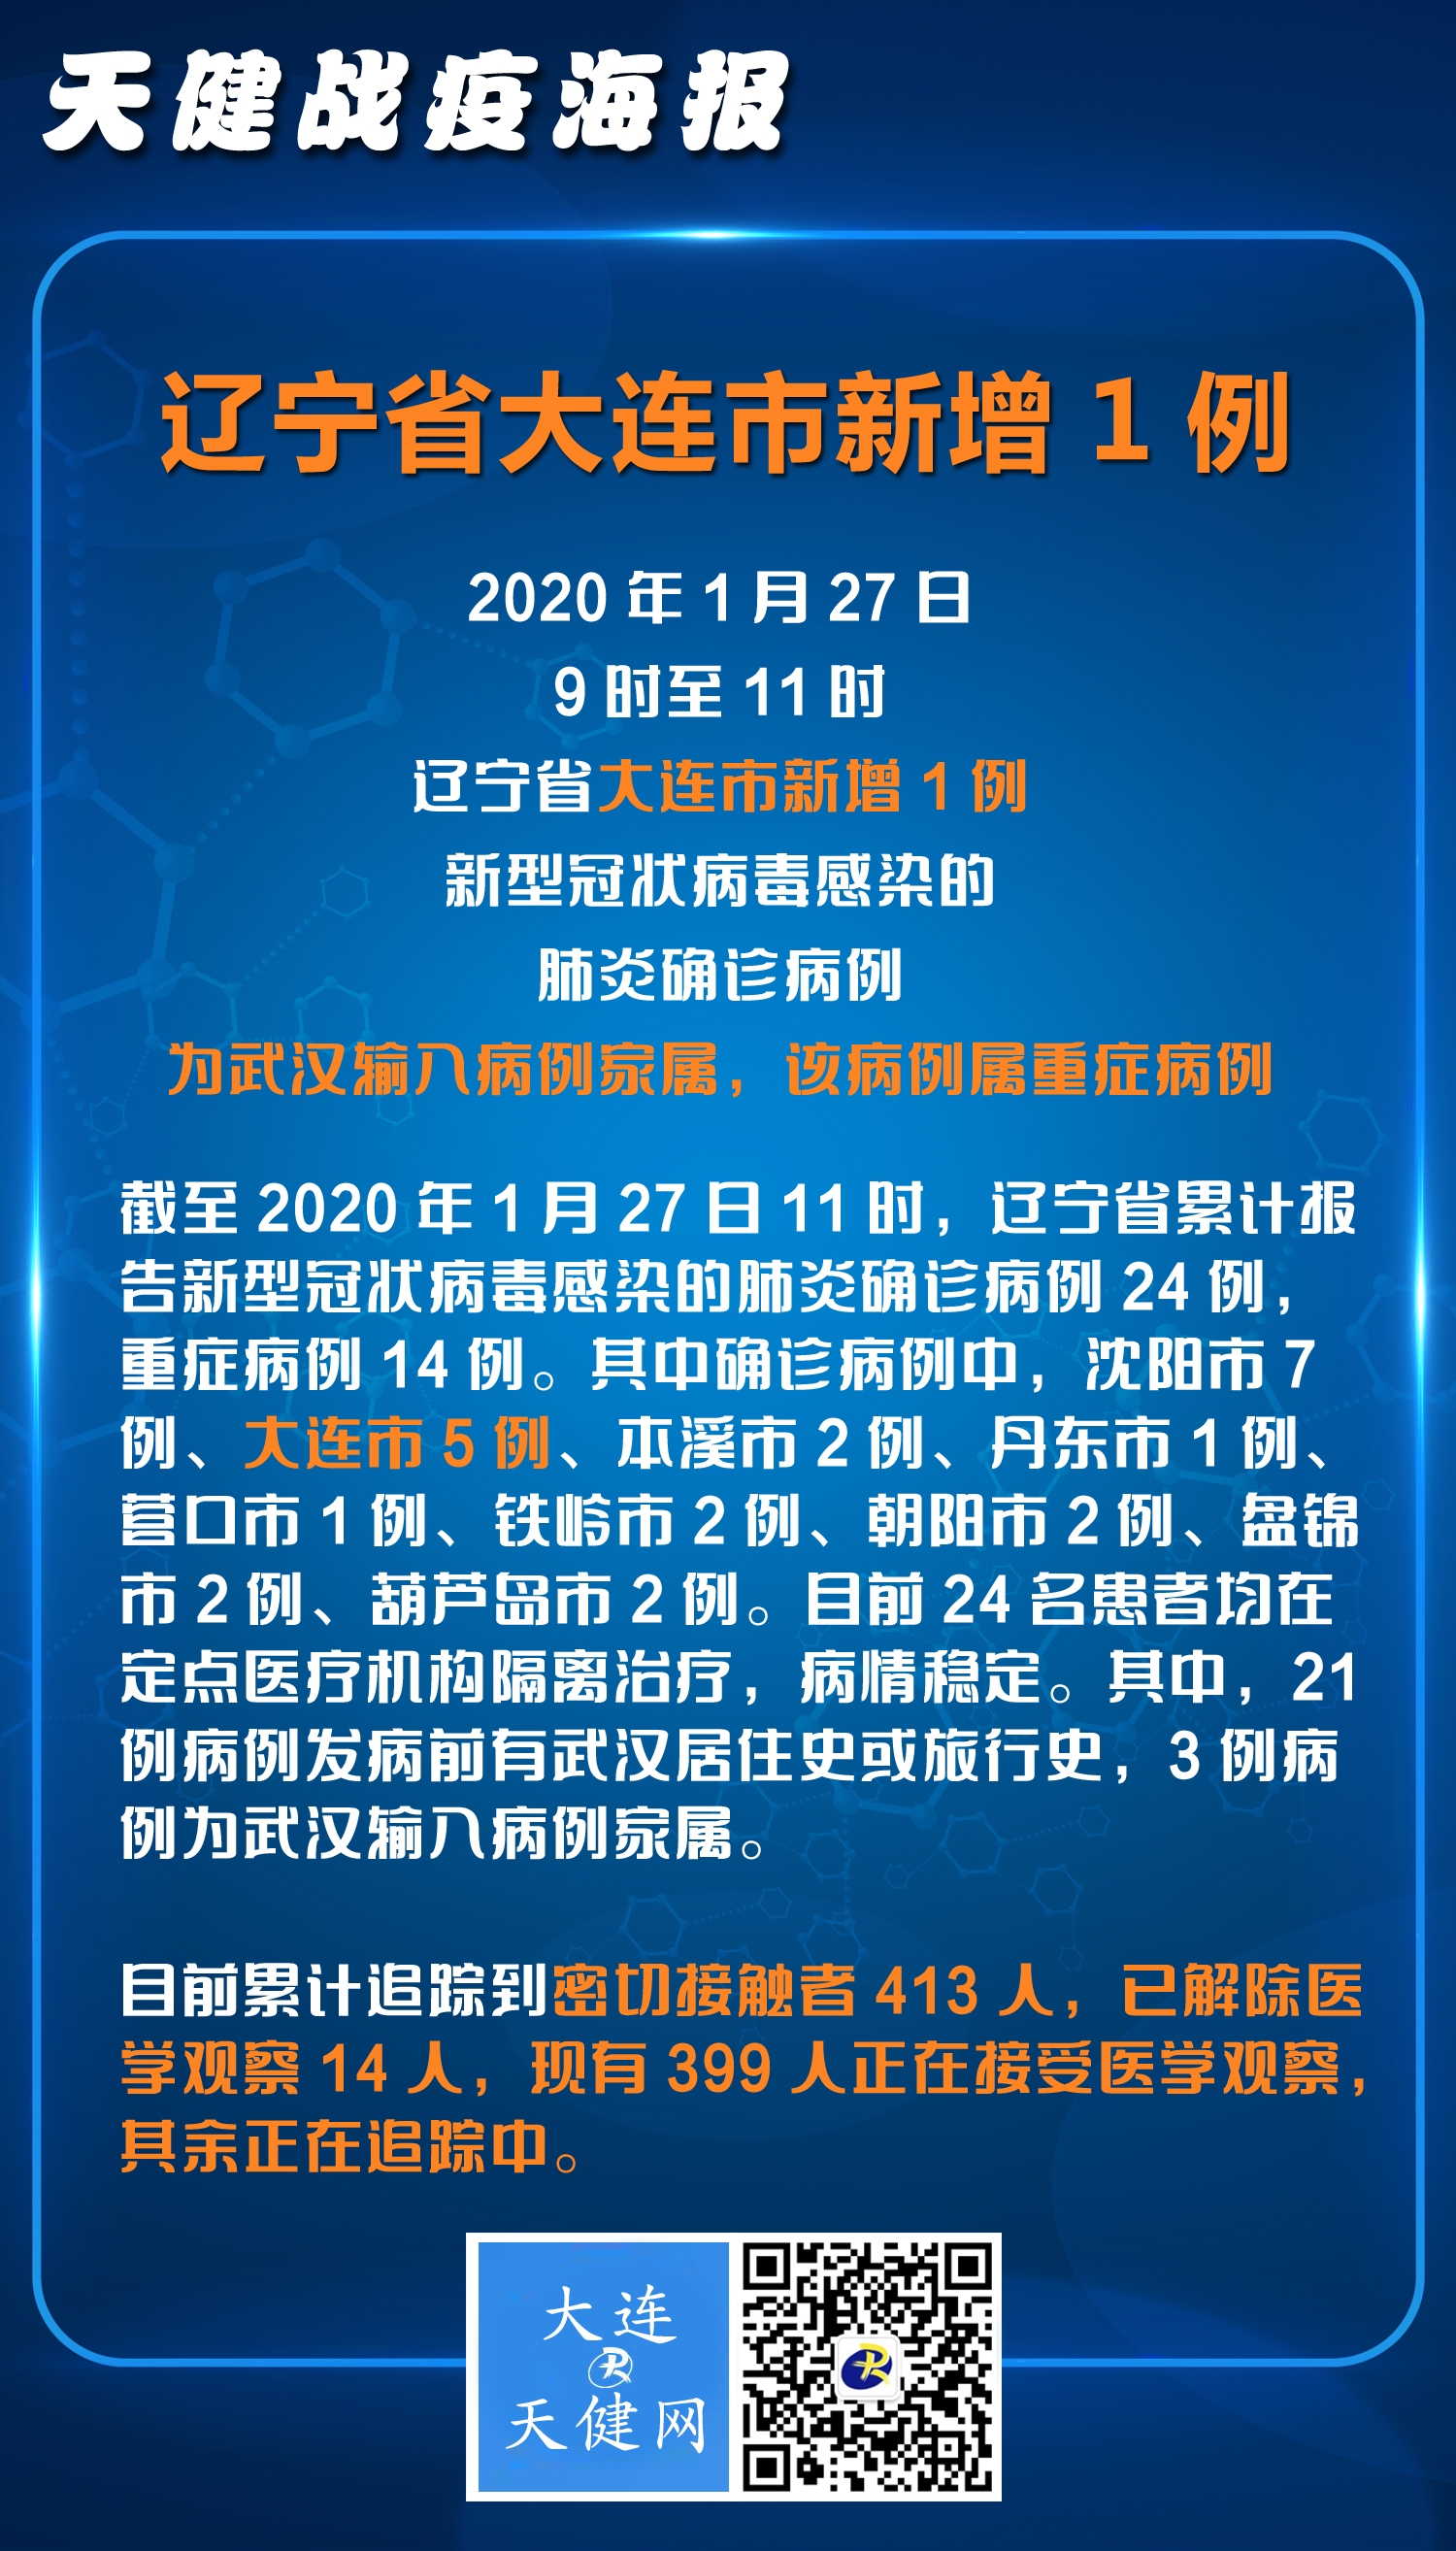 2020年1月27日9时至11时辽宁新型冠状病毒感染的肺炎疫情情况